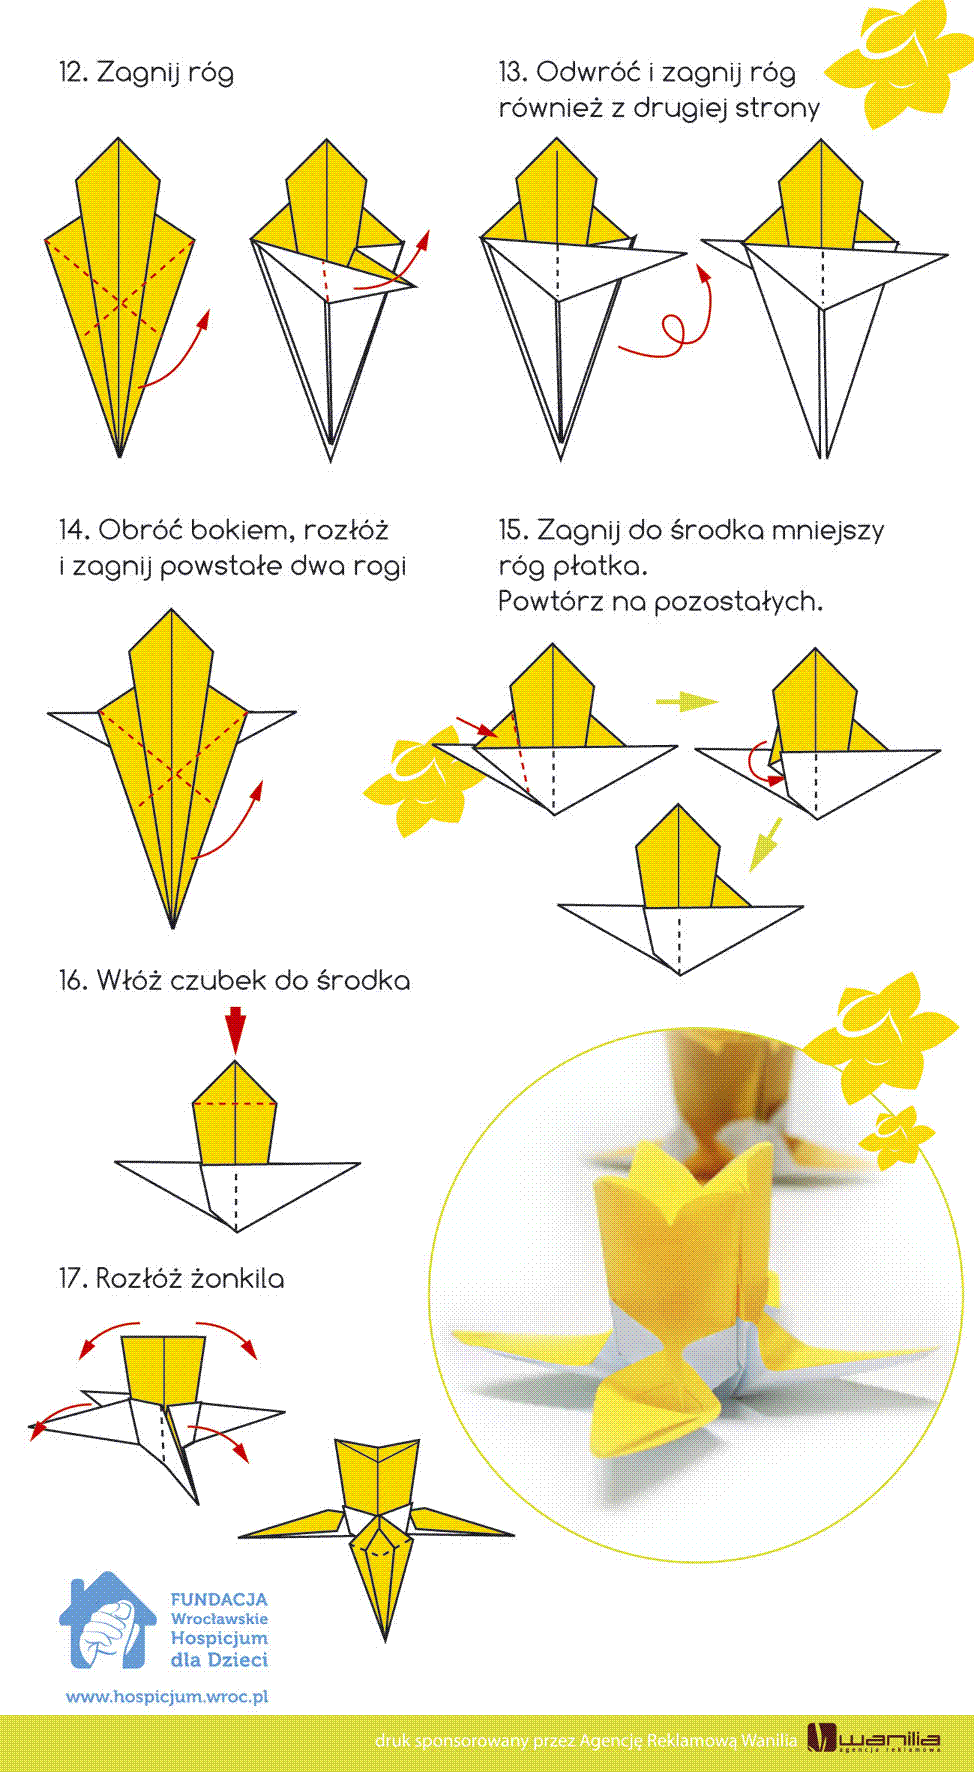 Żonkil - origami, instrukcja do wydrukowania